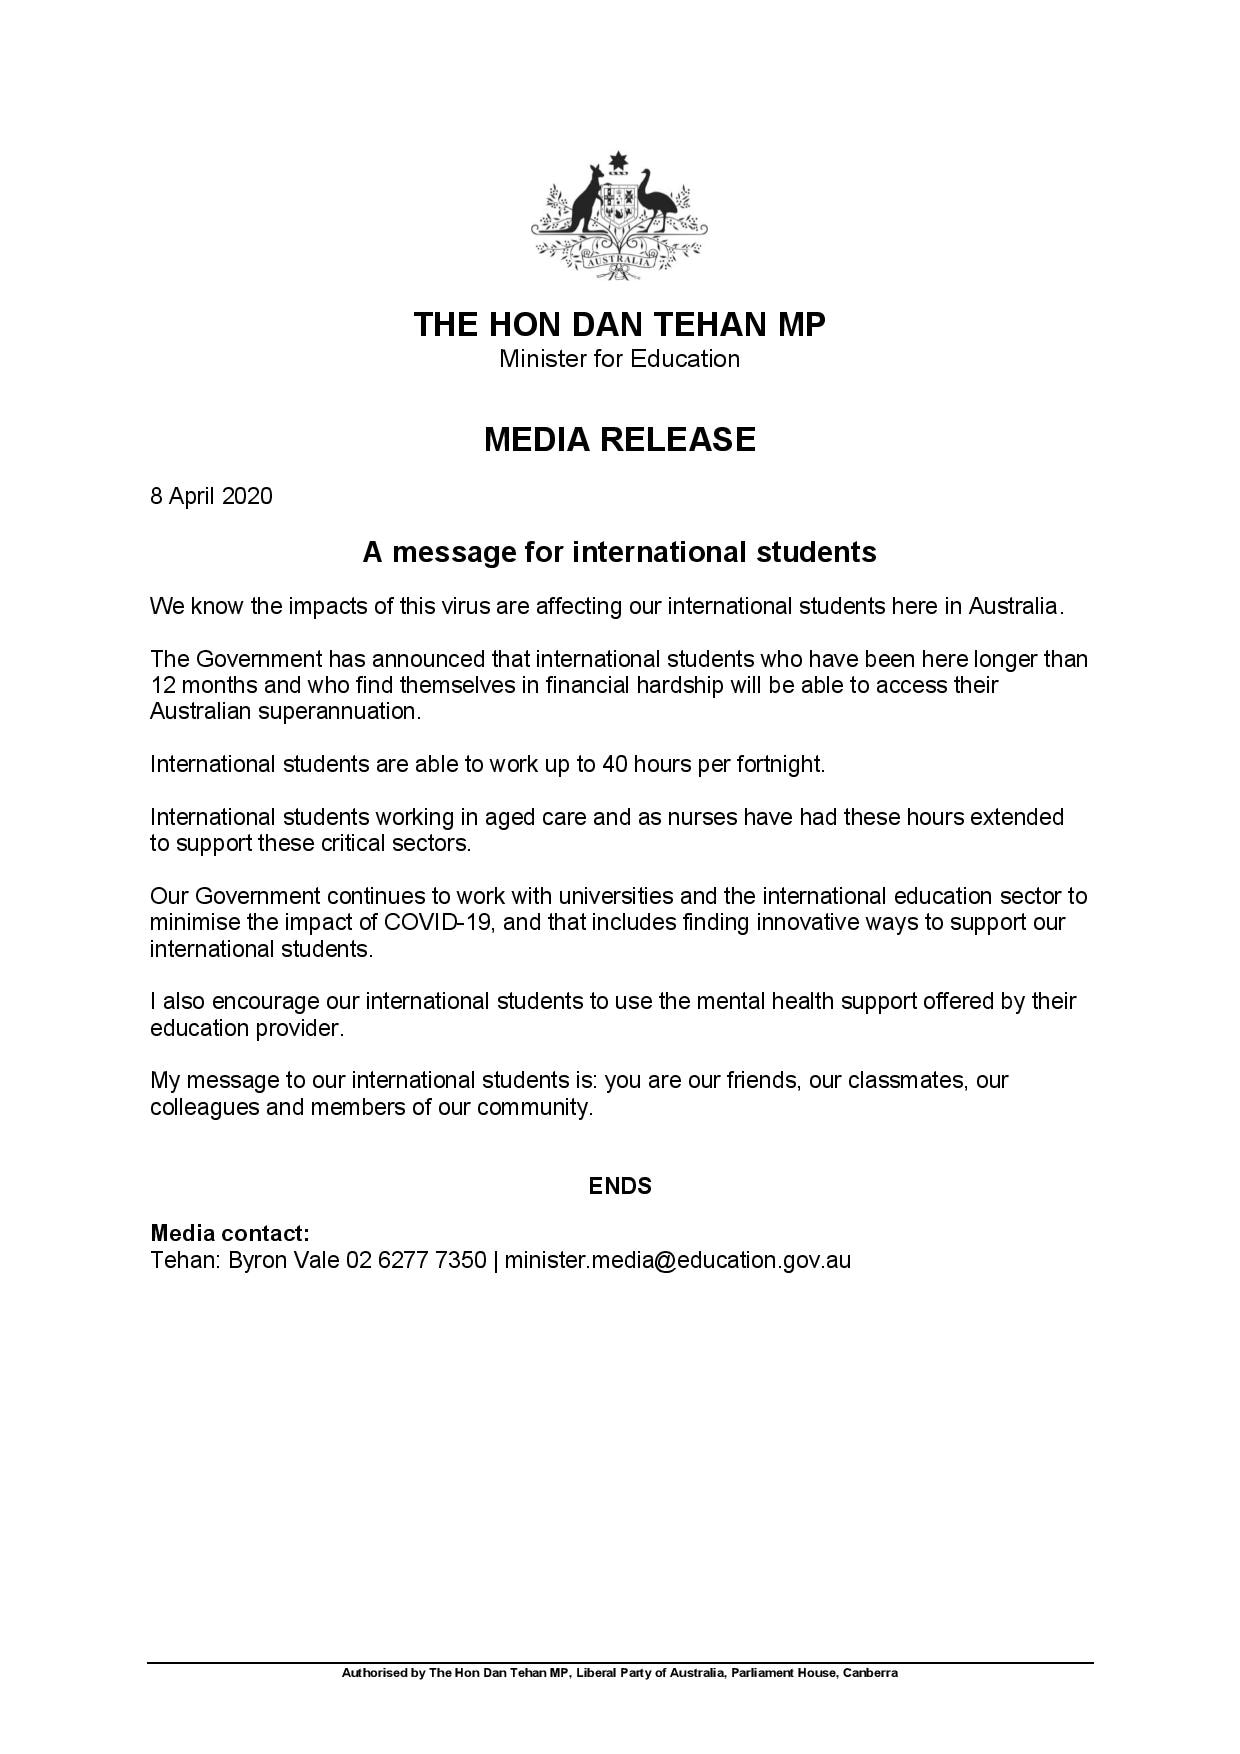 پیام دن تهان وزیر آموزش و پرورش استرالیا به دانشجویان بین المللی